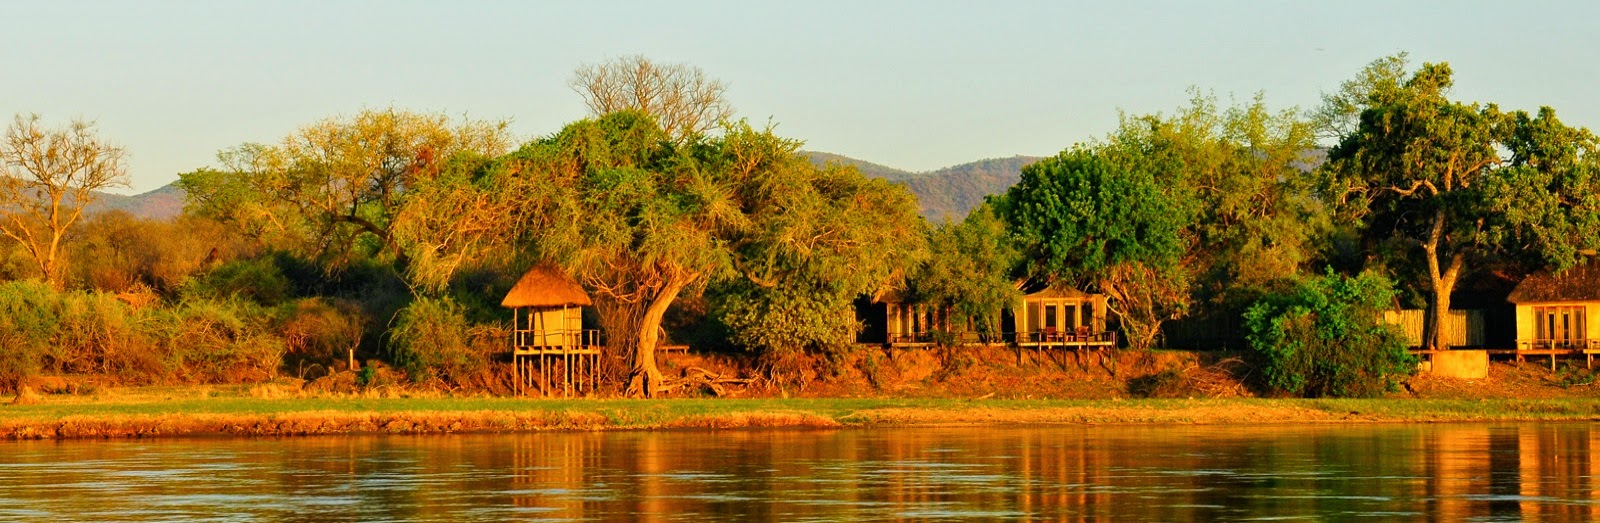 Along the Lower Zambezi River